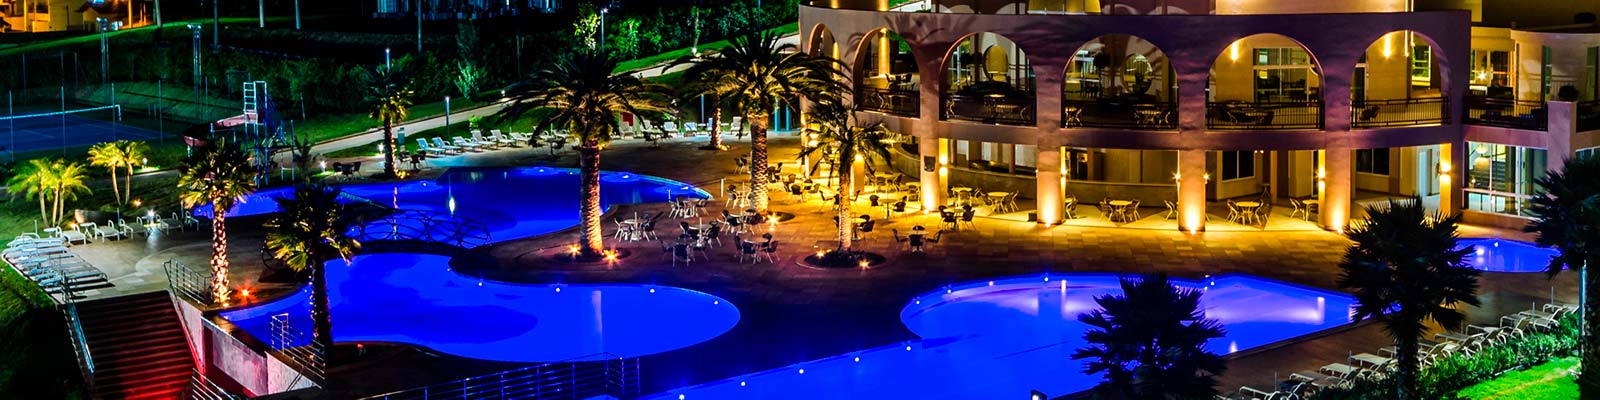 Noite em Mira Serra Parque Hotel - MG